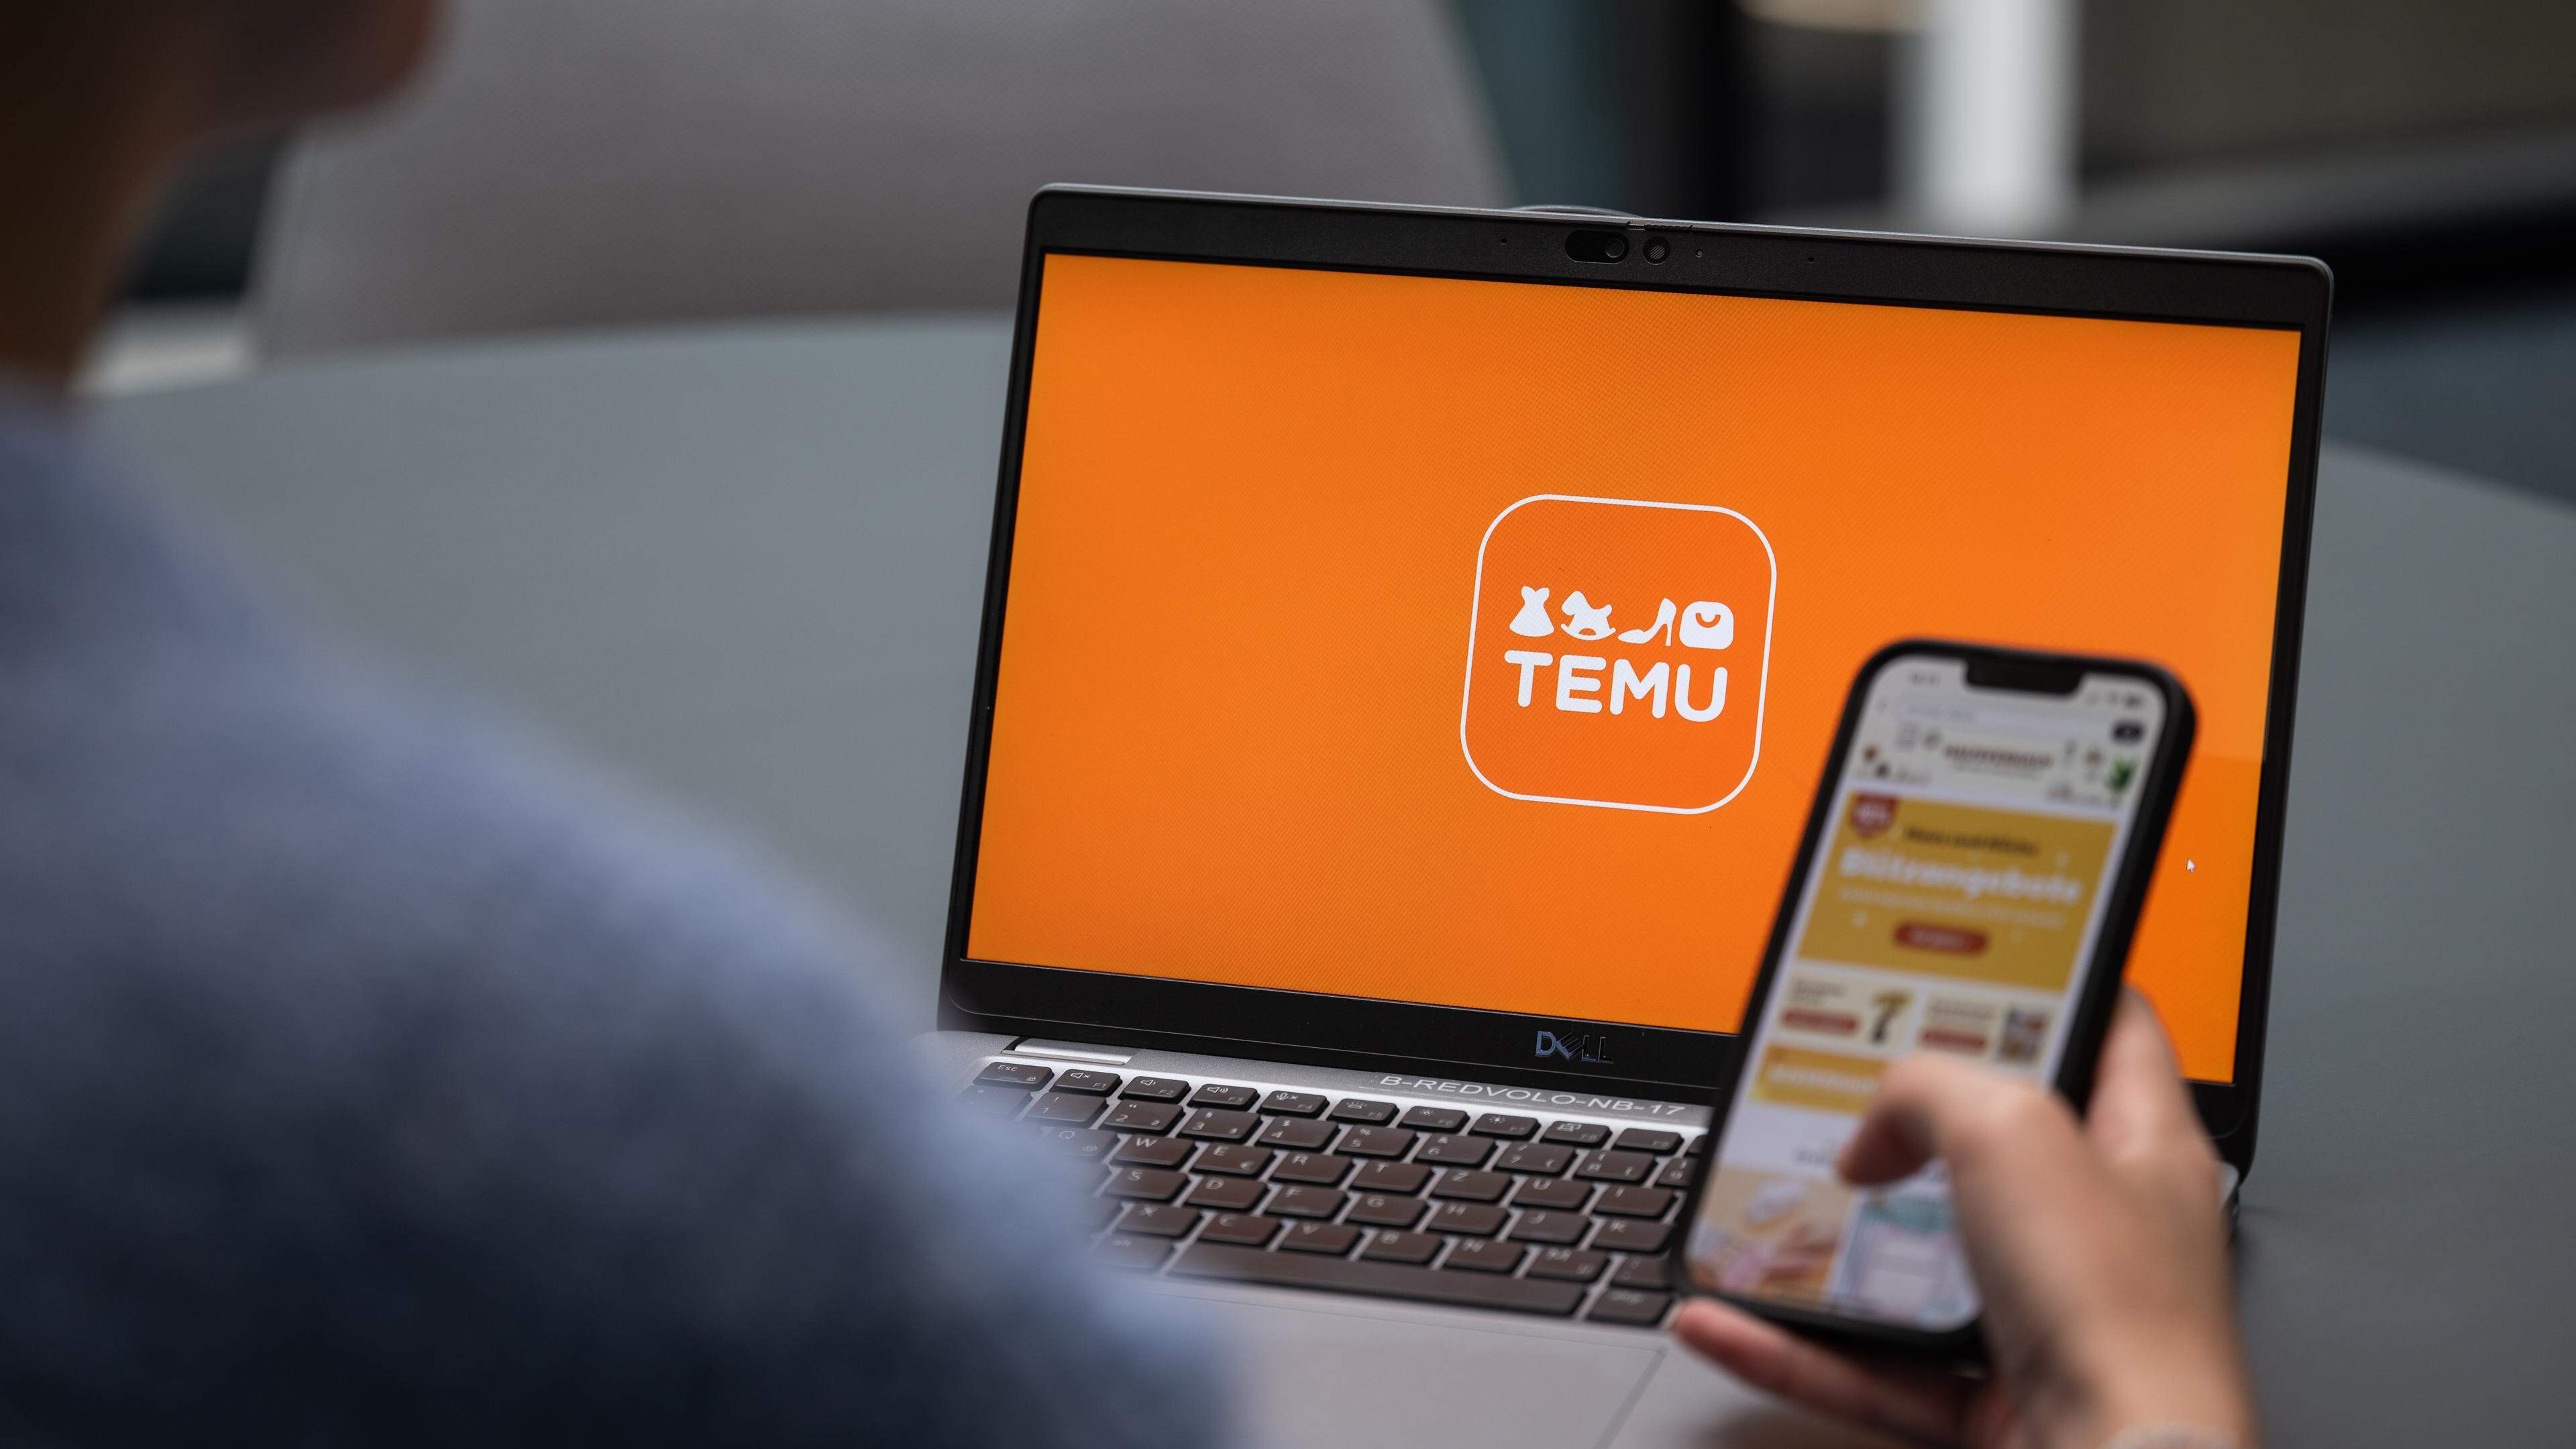 Temu est actif dans 59 pays, dont le Luxembourg. La plateforme est encore relativement peu connue au Grand-Duché.